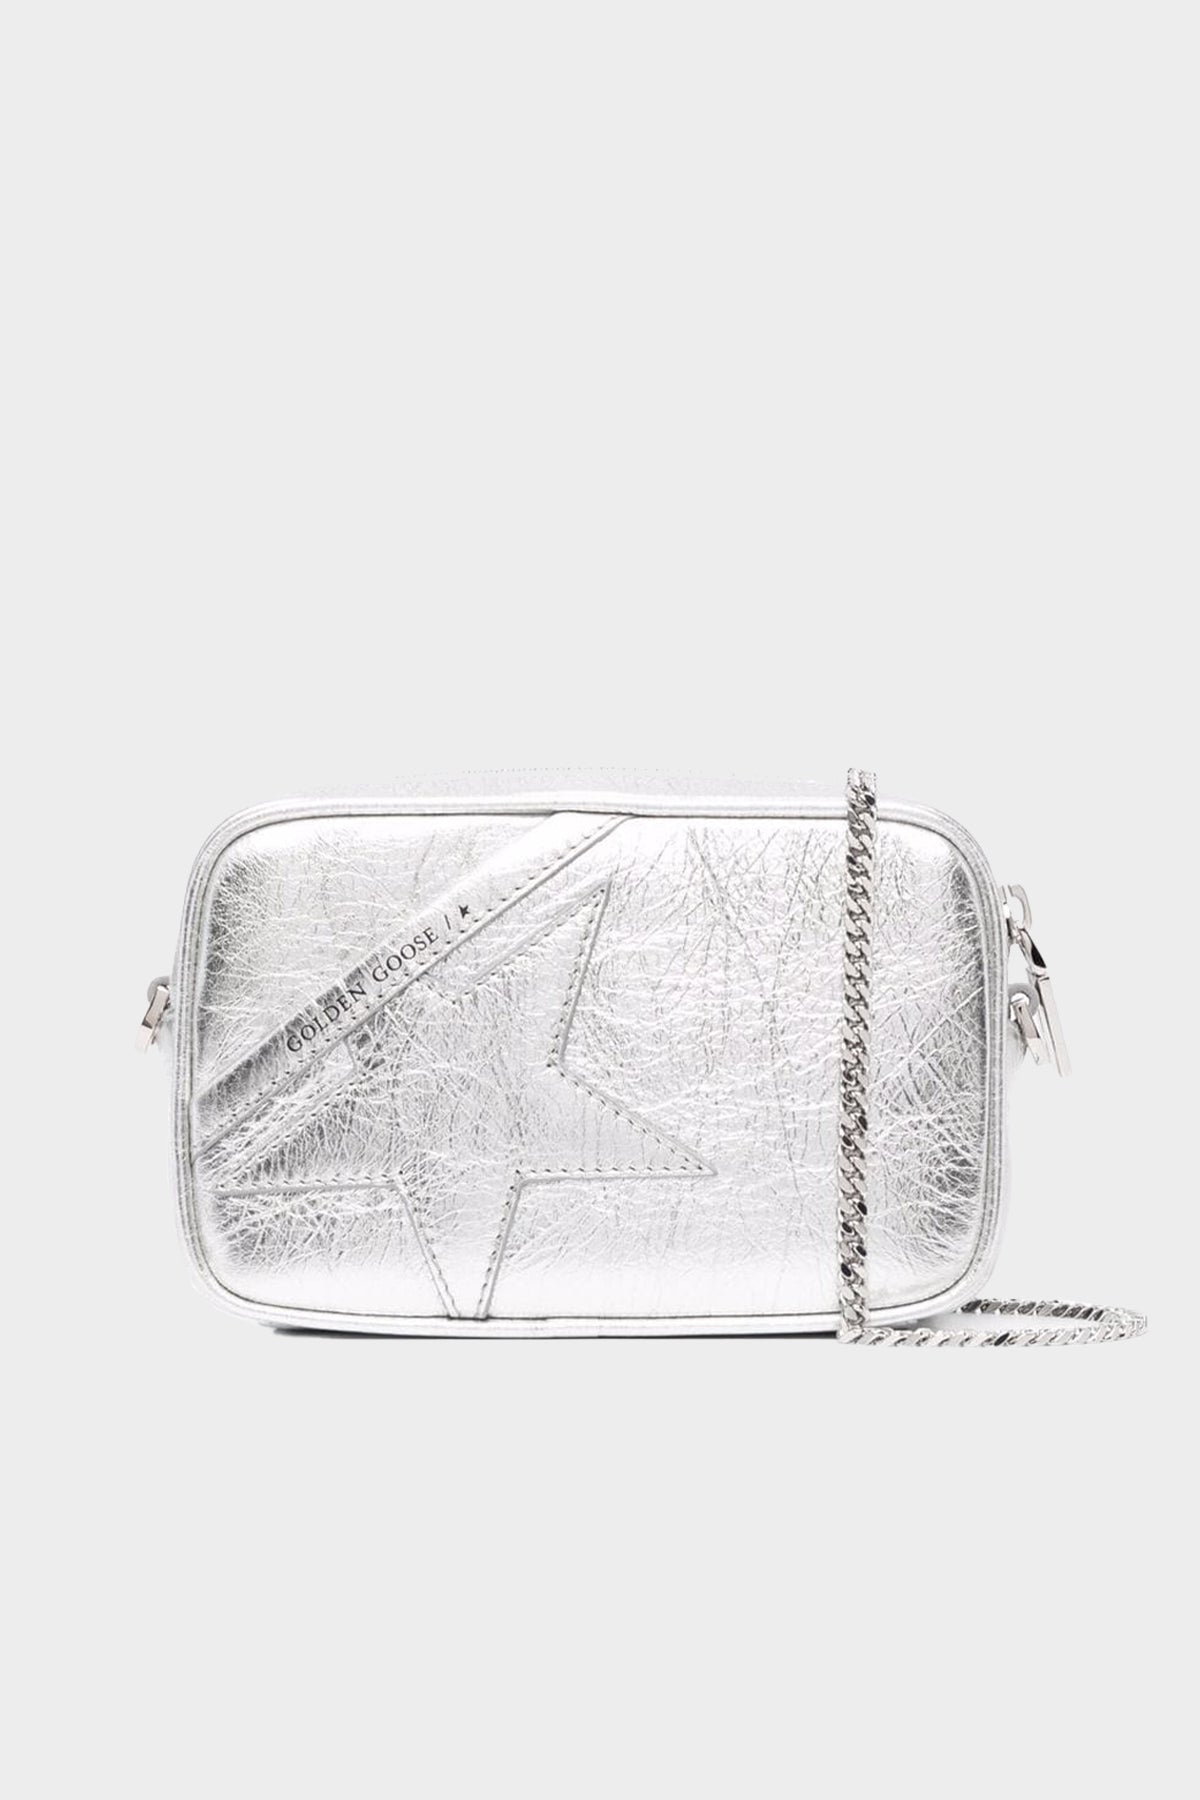 Mini-Star Bag Wrinkled Leather Bag in Silver - shop-olivia.com